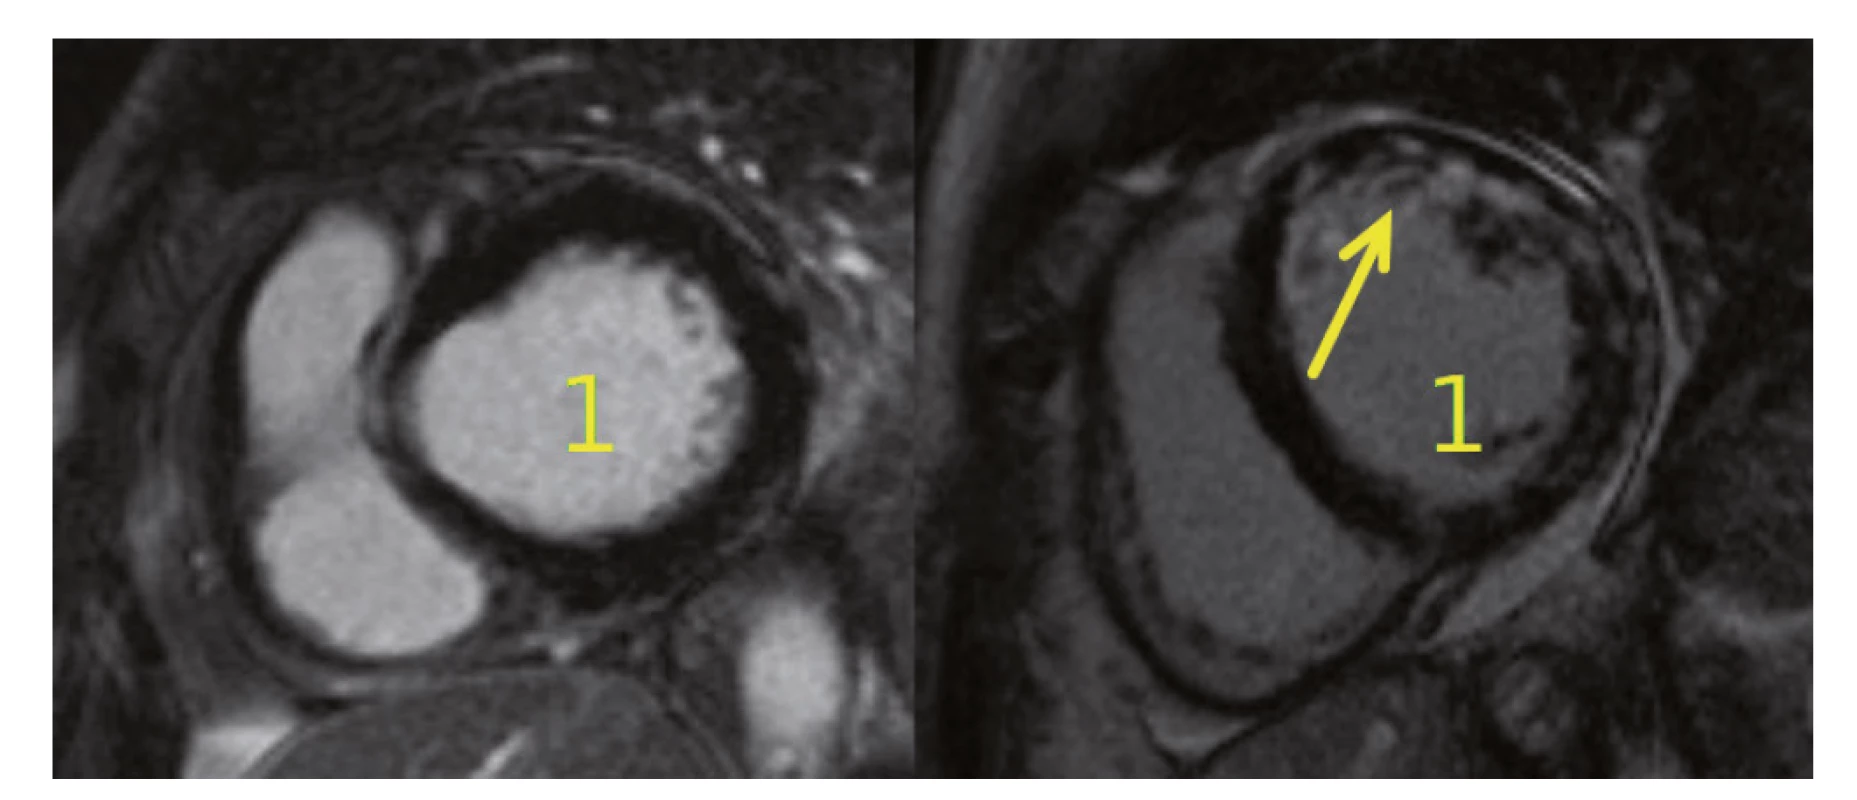 MR srdce u pacientek s MPA. Na obrázku vlevo je normální nález zjištěný u naší pacientky po podání cyklofosfamidu,
vpravo je viditelné postižení myokardu při MPA (dilatace levé komory (1) s okrskovitou opacifikací stěny LK v bazálních a středních
segmentech s převahou mid-wall lokalizace (šipka)